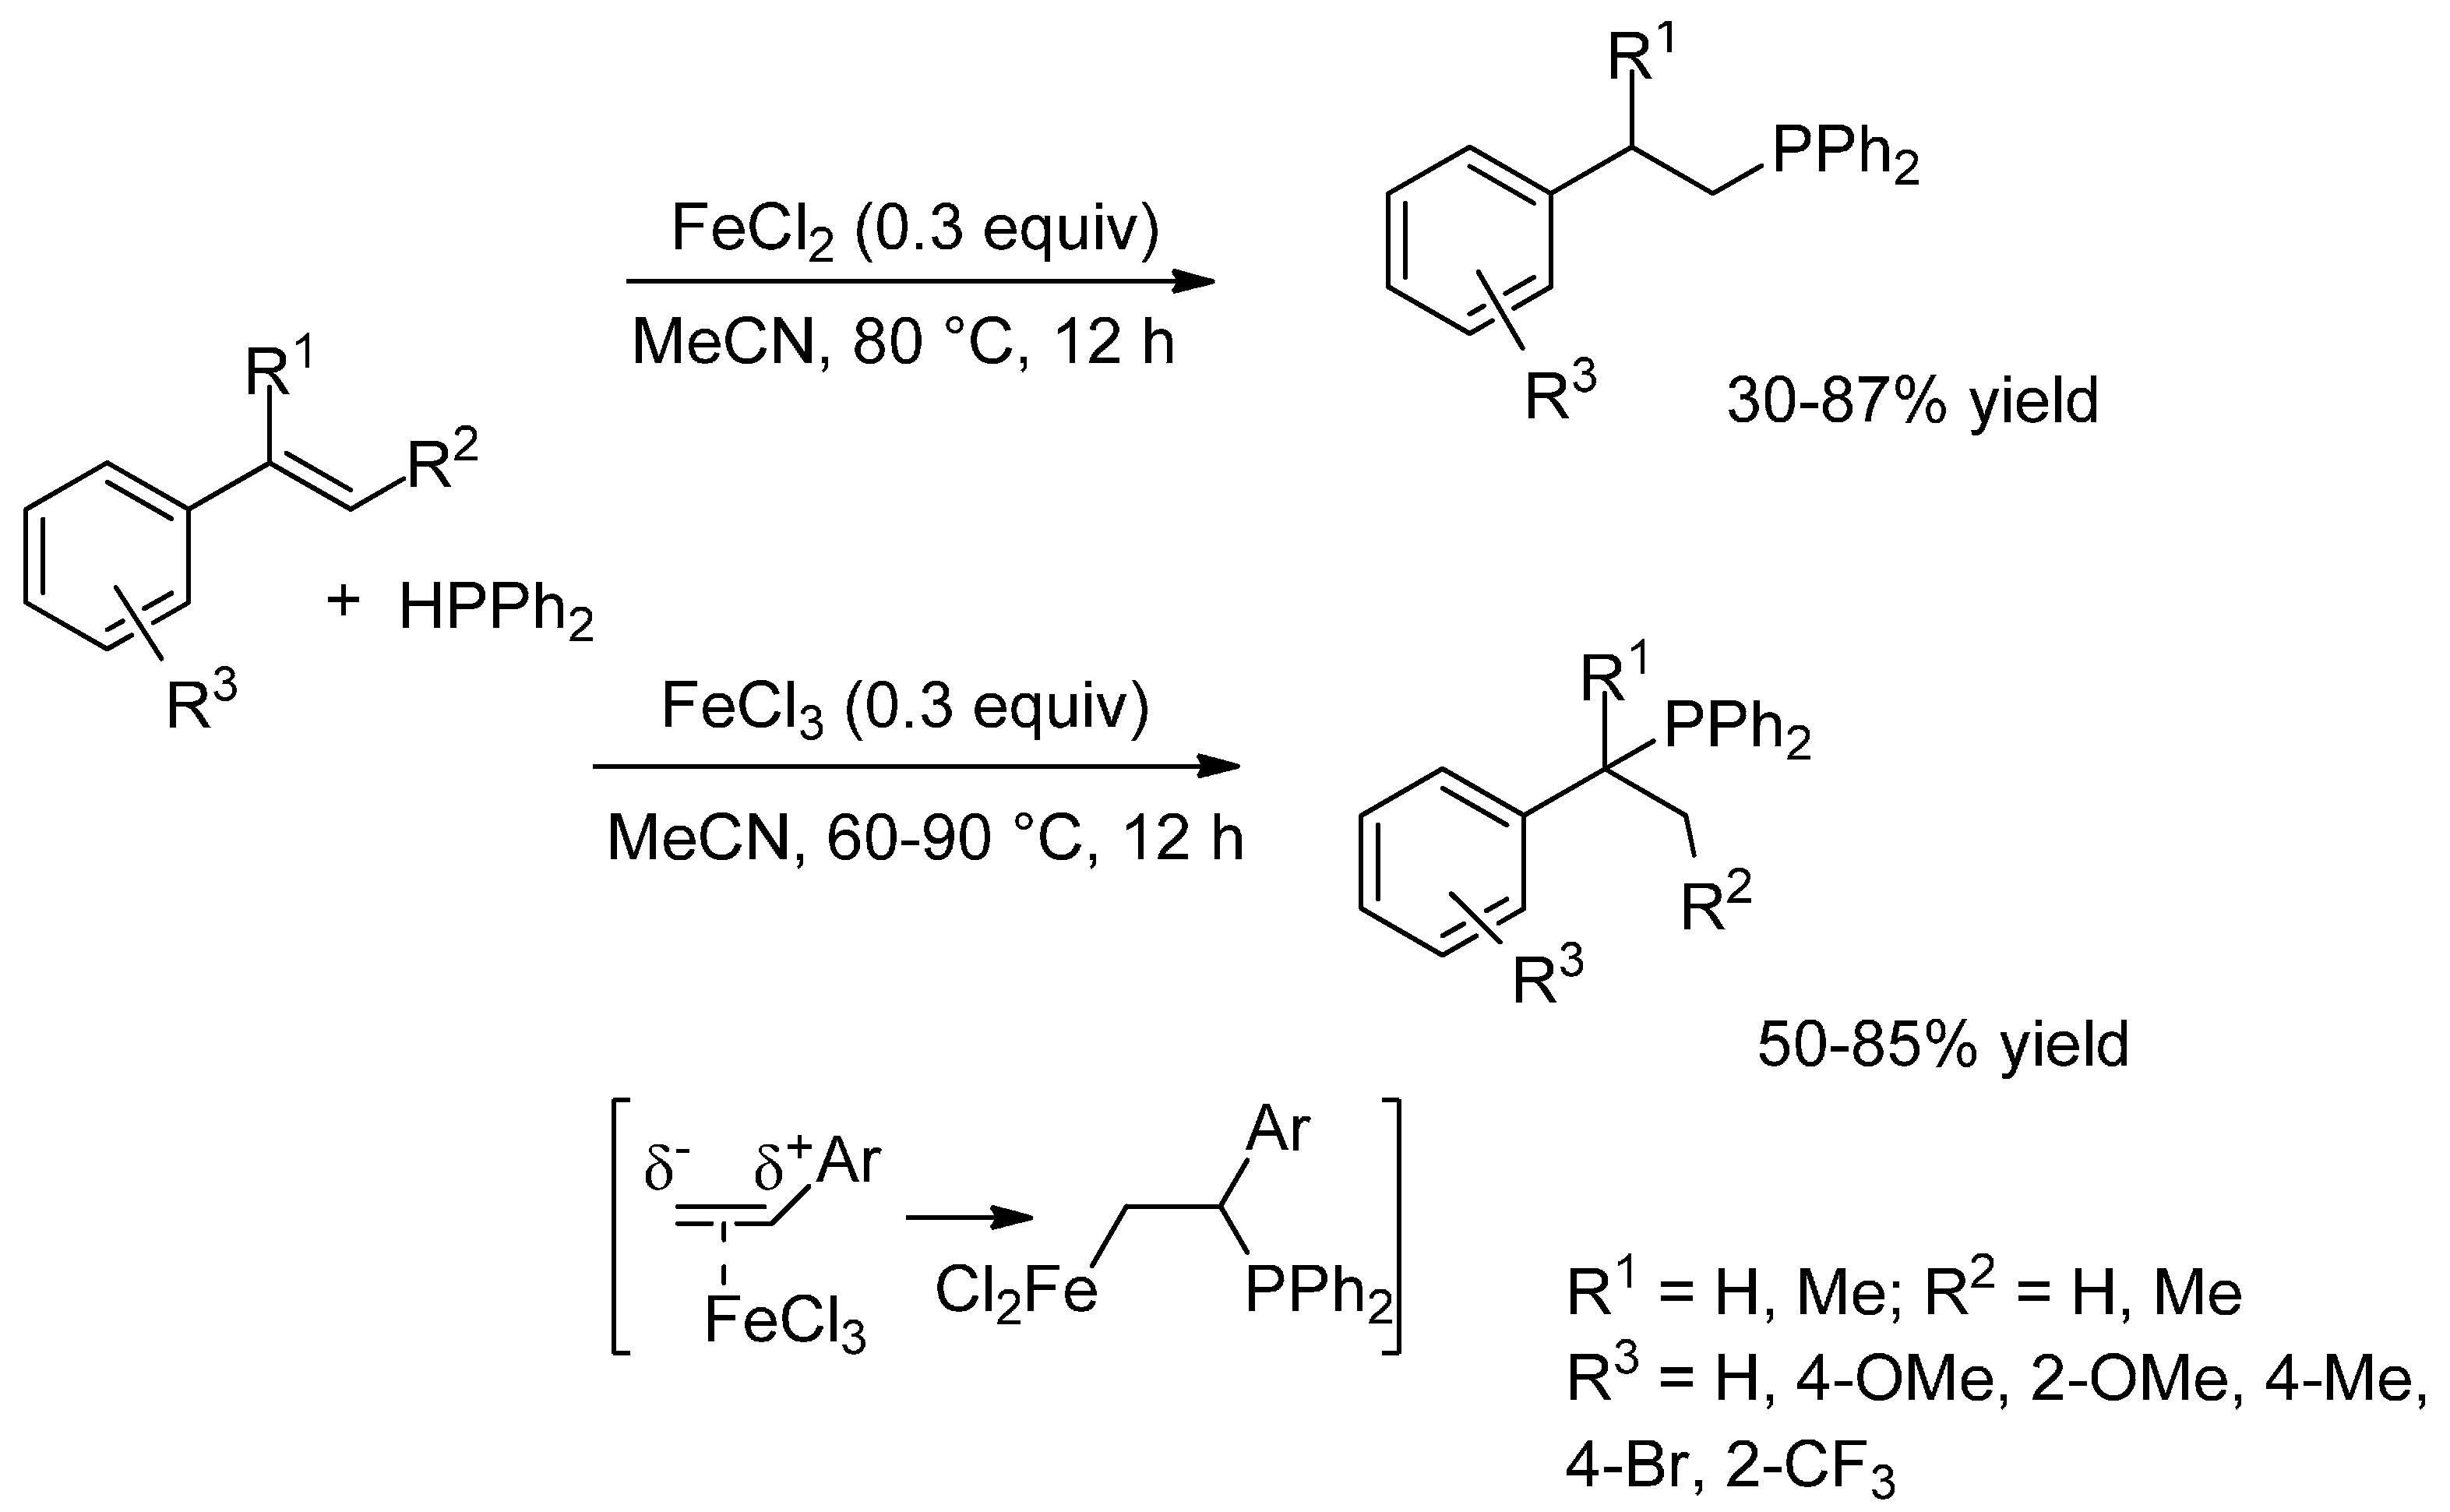 Mg fecl2 реакция. Амидопирин fecl3 реакция. Антипирин + fecl3. Амидопирин + fecl3. Цистеин + fecl3.